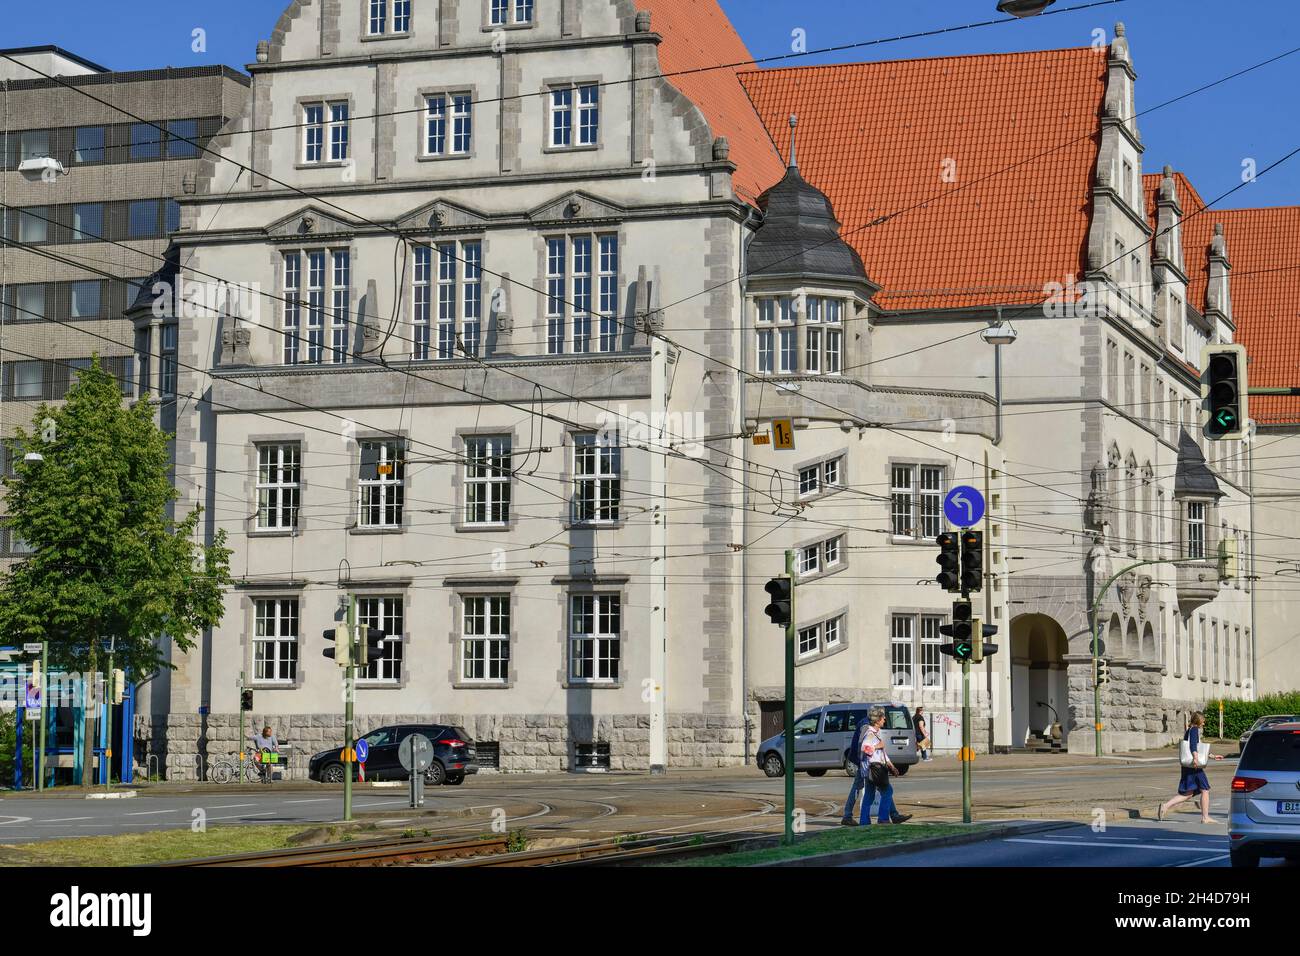 Landgericht, Amtsgericht, Niederwall, Detmolder Straße, Bielefeld, Nordrhein-Westfalen, Deutschland Stock Photo